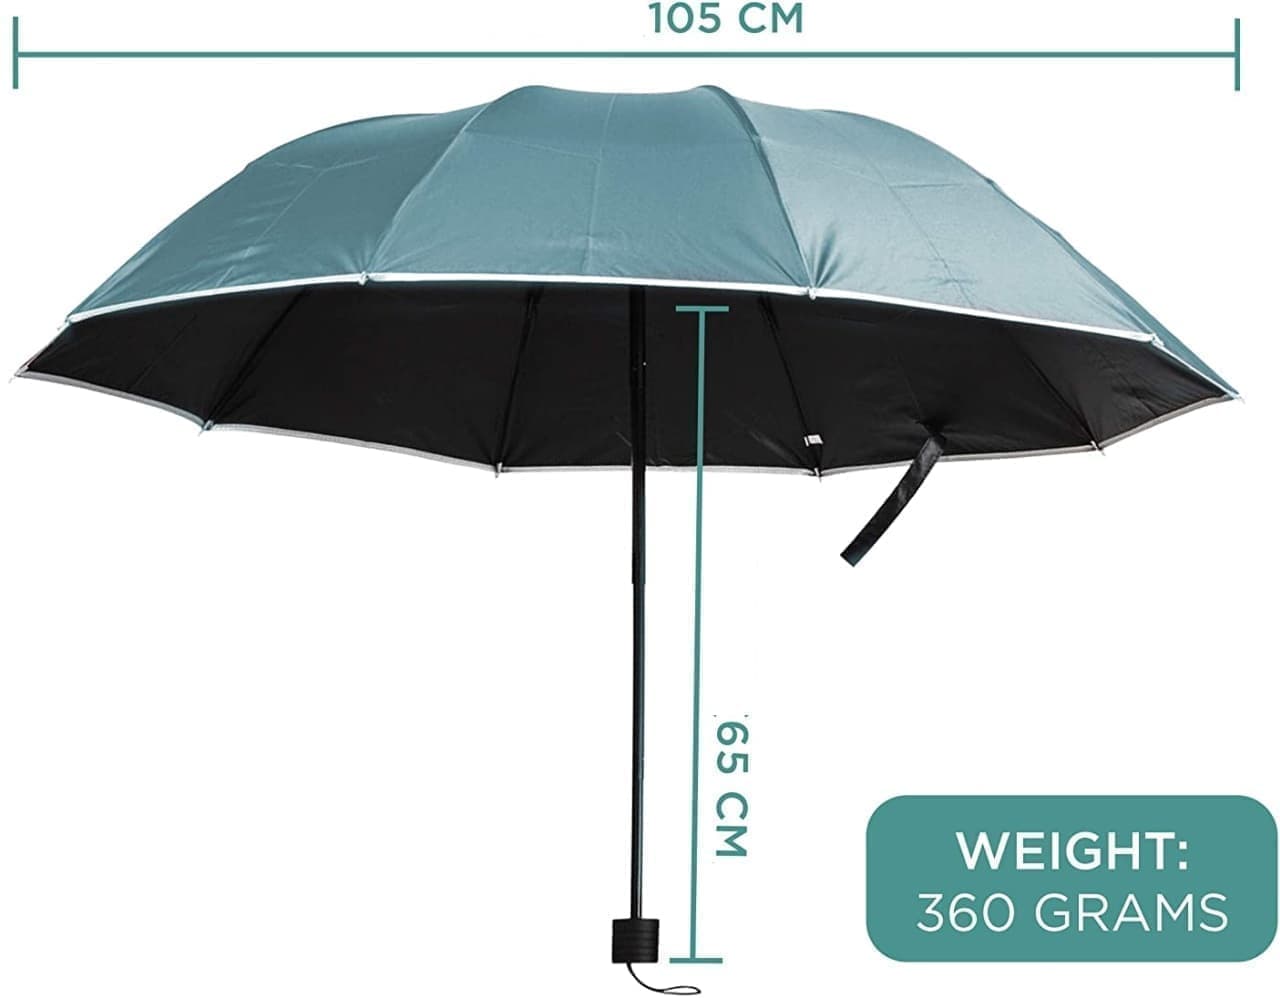 ハンズフリーで使える傘Primo Supplyの「Wearable Hands-Free Umbrella」